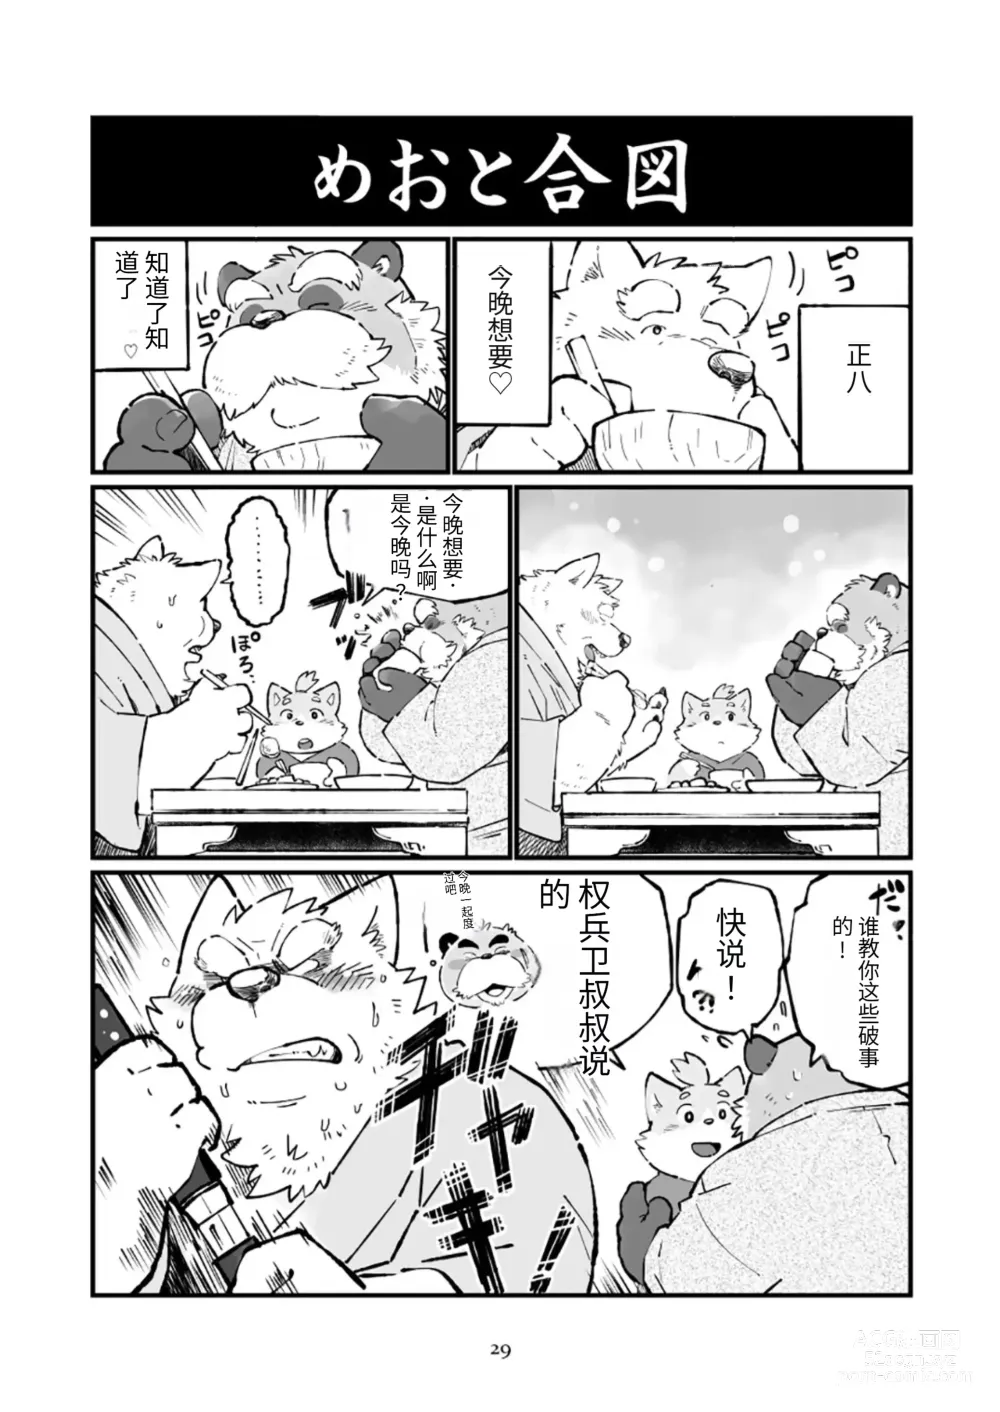 Page 29 of doujinshi 狗津原细见